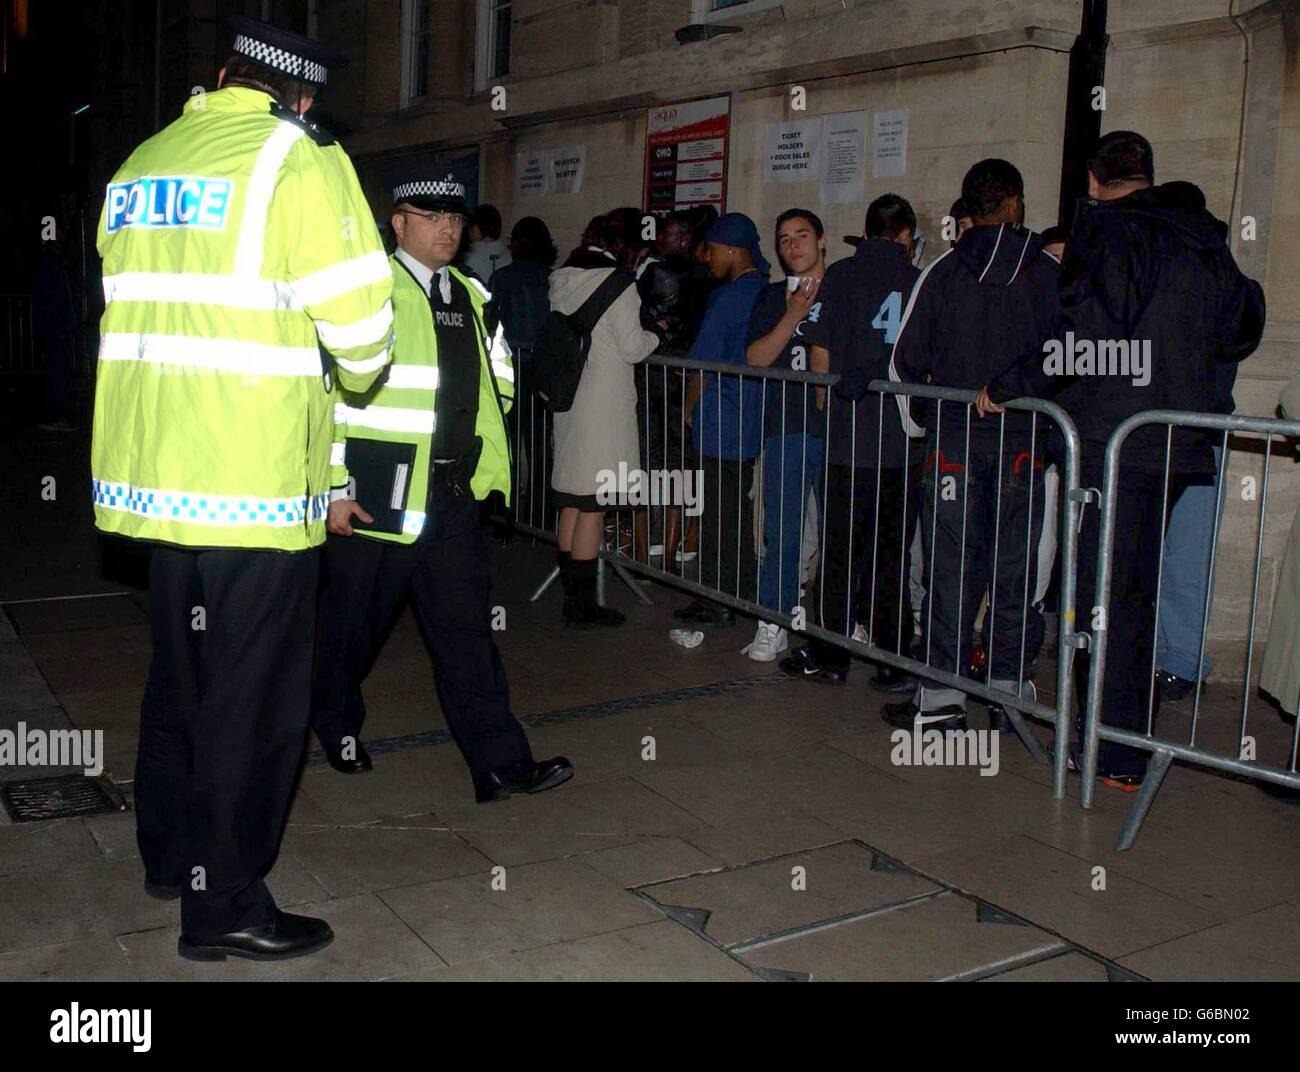 La police regarde tandis que les fans se tournent vers l'extérieur de la salle de musique Ocean, à Hackney, pour un concert de So Solid Crew. Banque D'Images